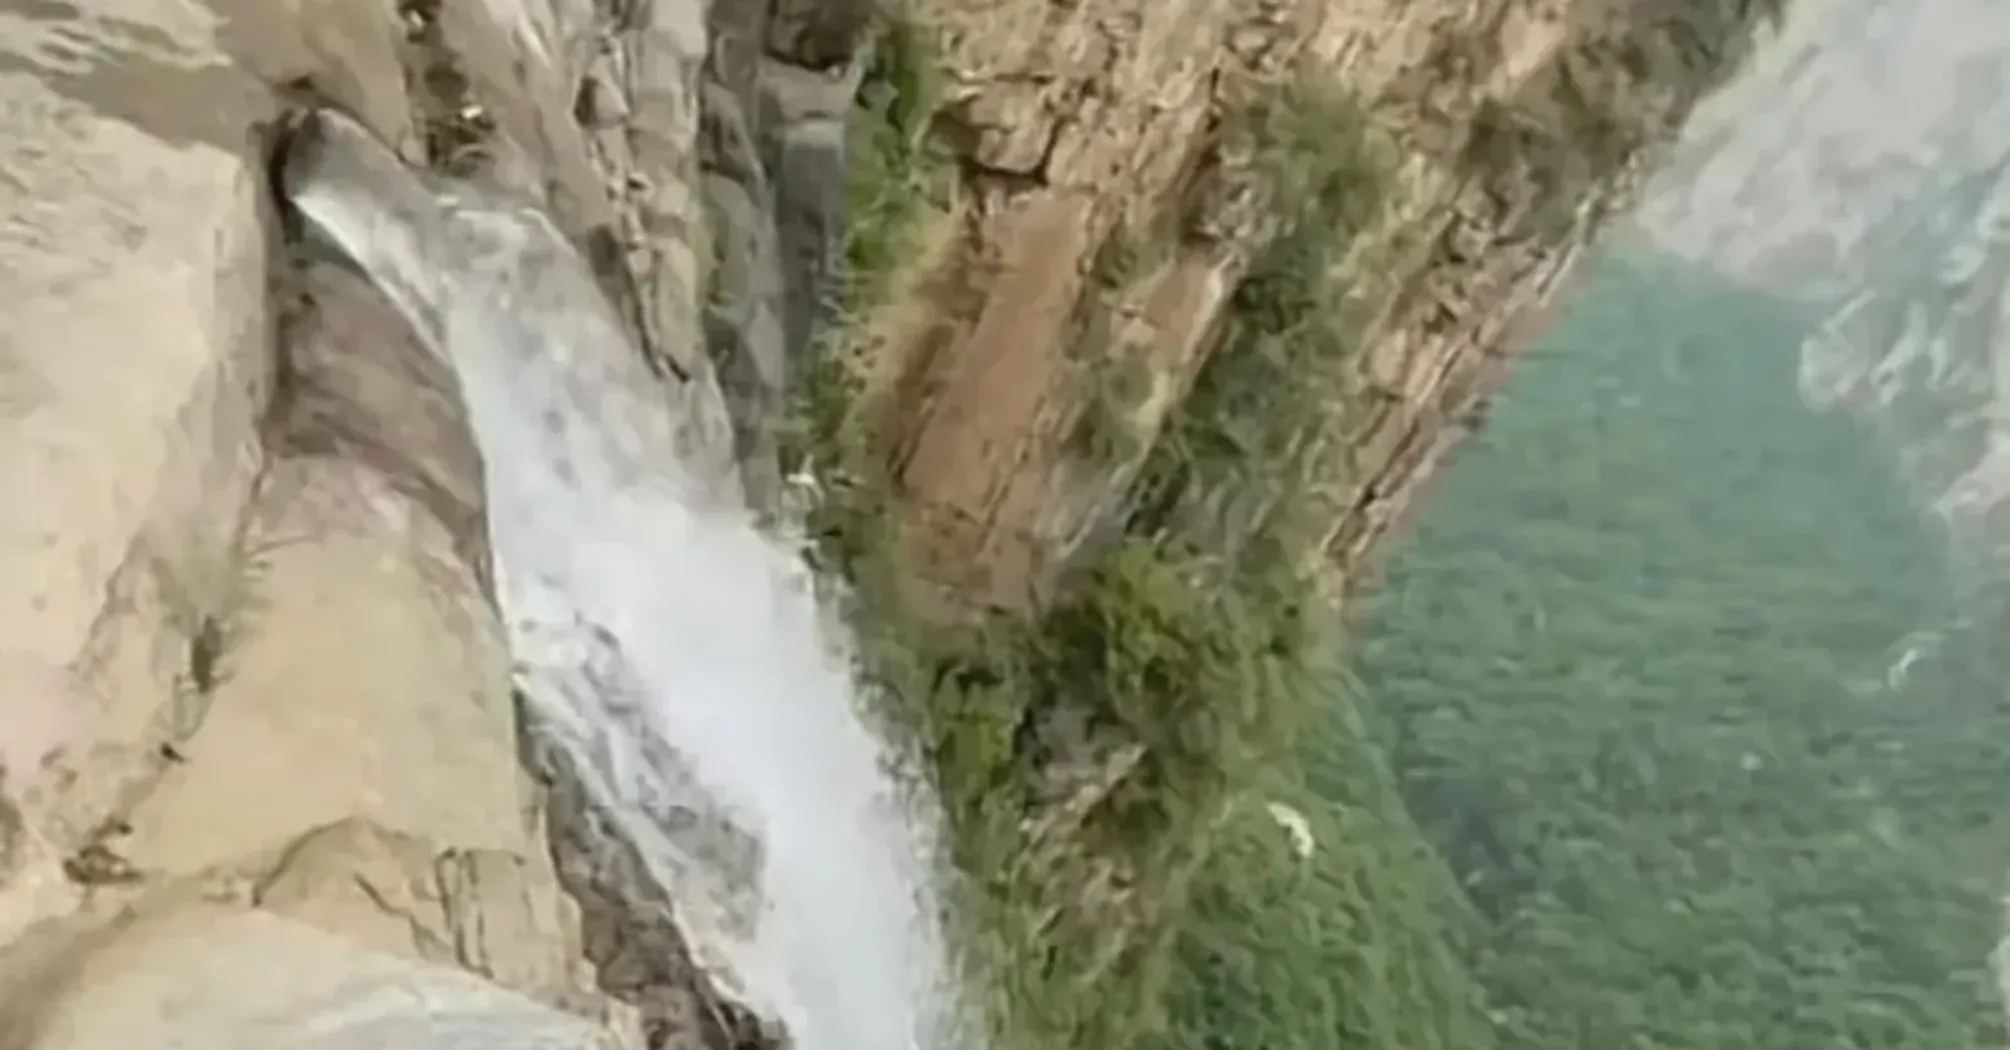 Оказался подделкой: самый высокий водопад Китая был создан людьми (фото, видео)